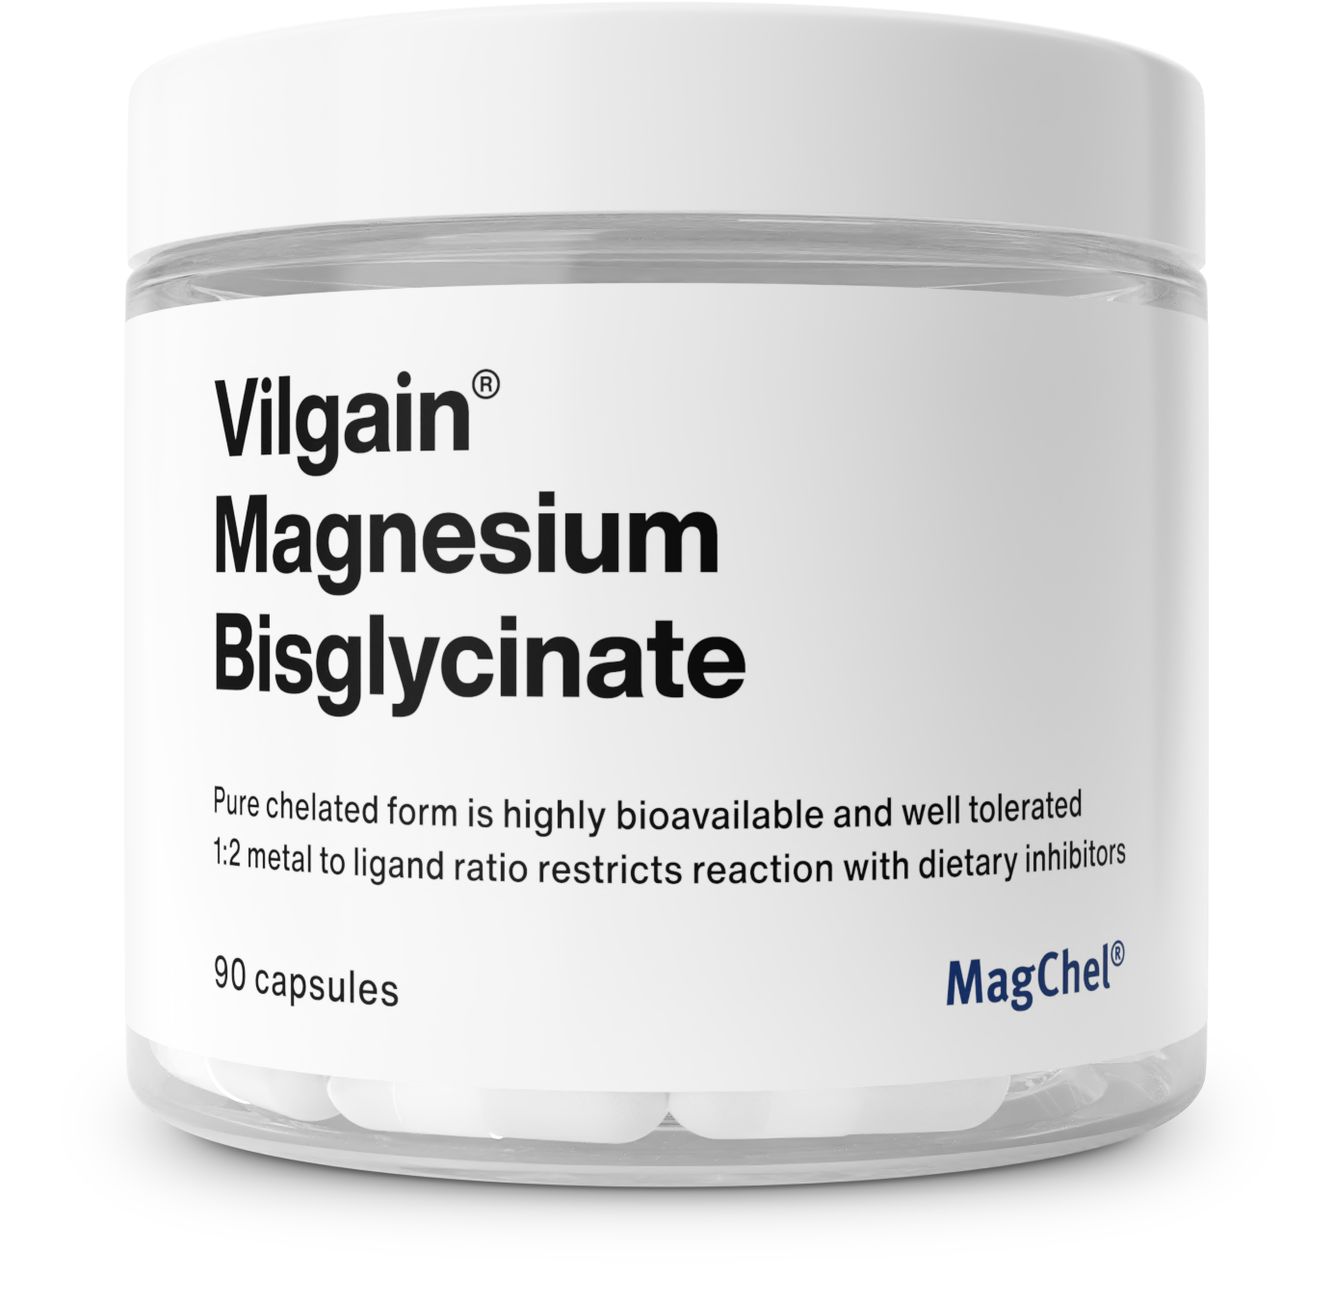 Vilgain Magnesium Bisglycinat